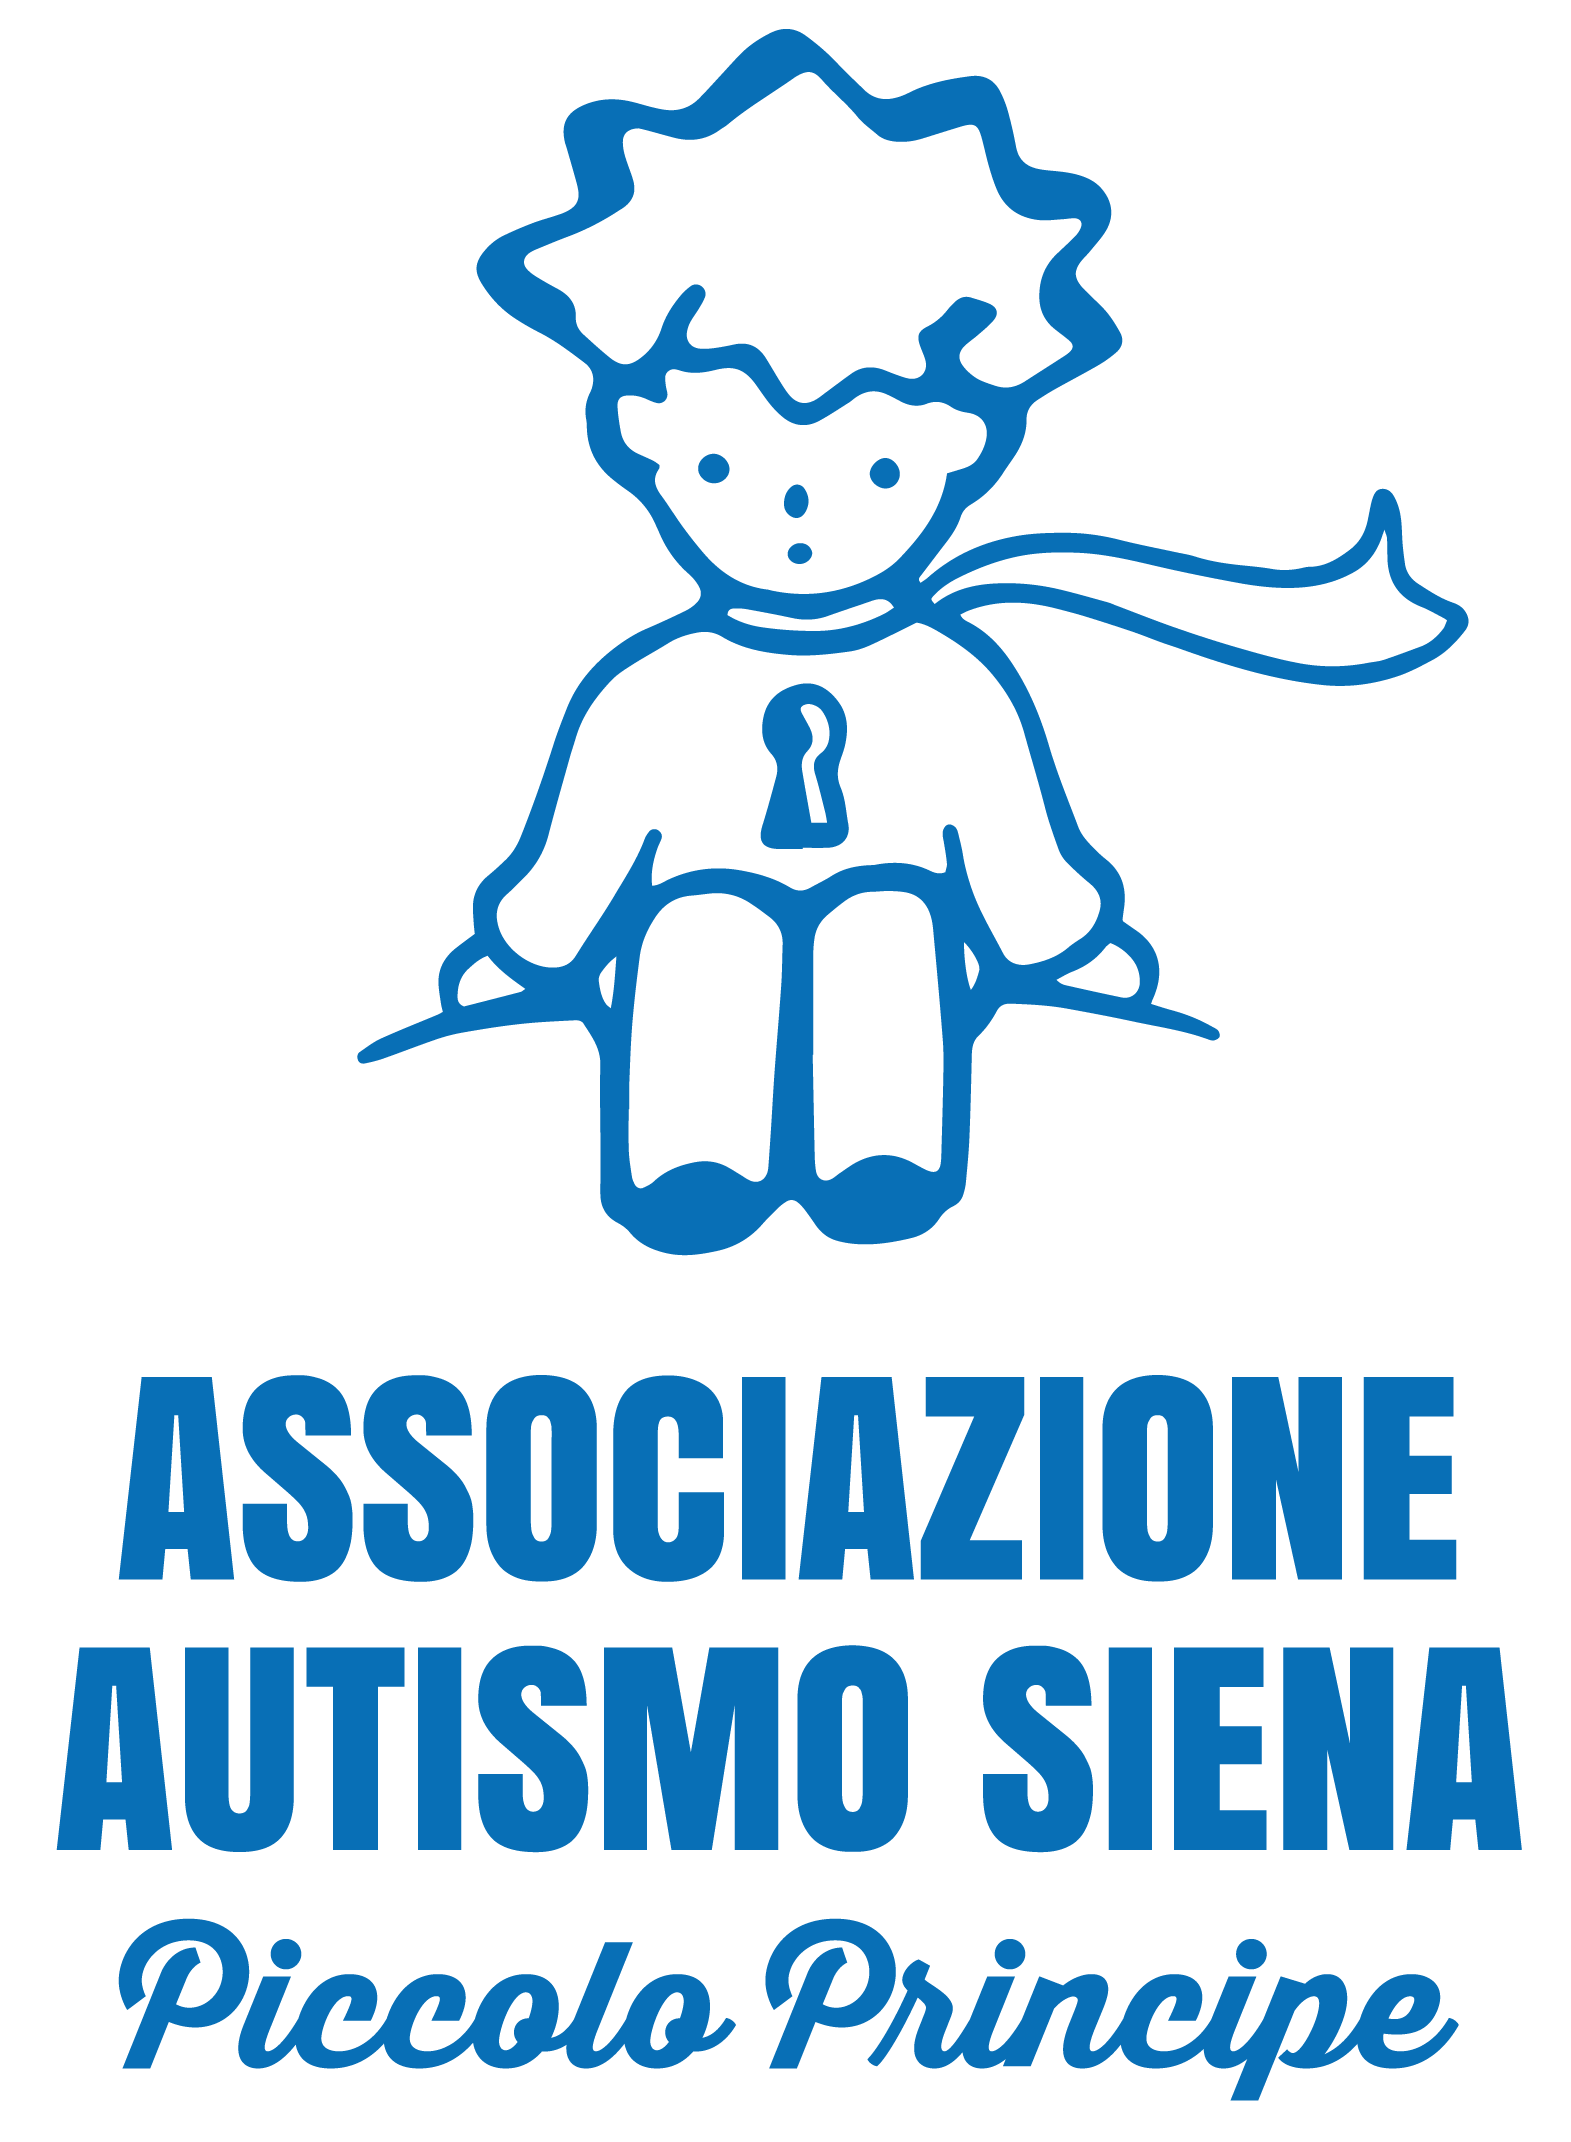 Autismo Siena